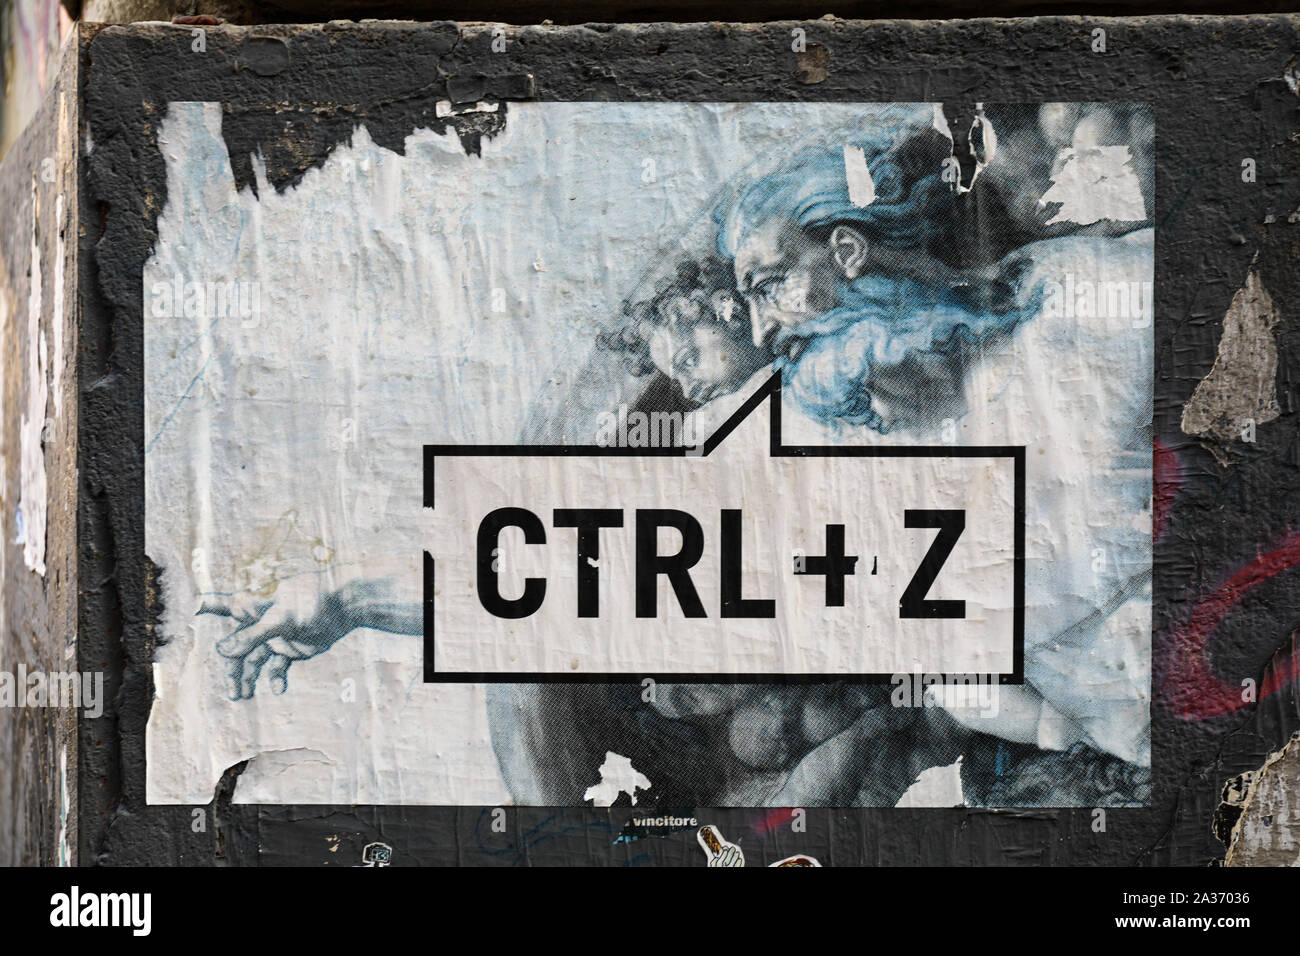 CTRL + Z annulla il comando. Annullare l'ultima funzione. Strappata ed alterò la street art poster nel quartiere di Trastevere a Roma, Italia. Foto Stock